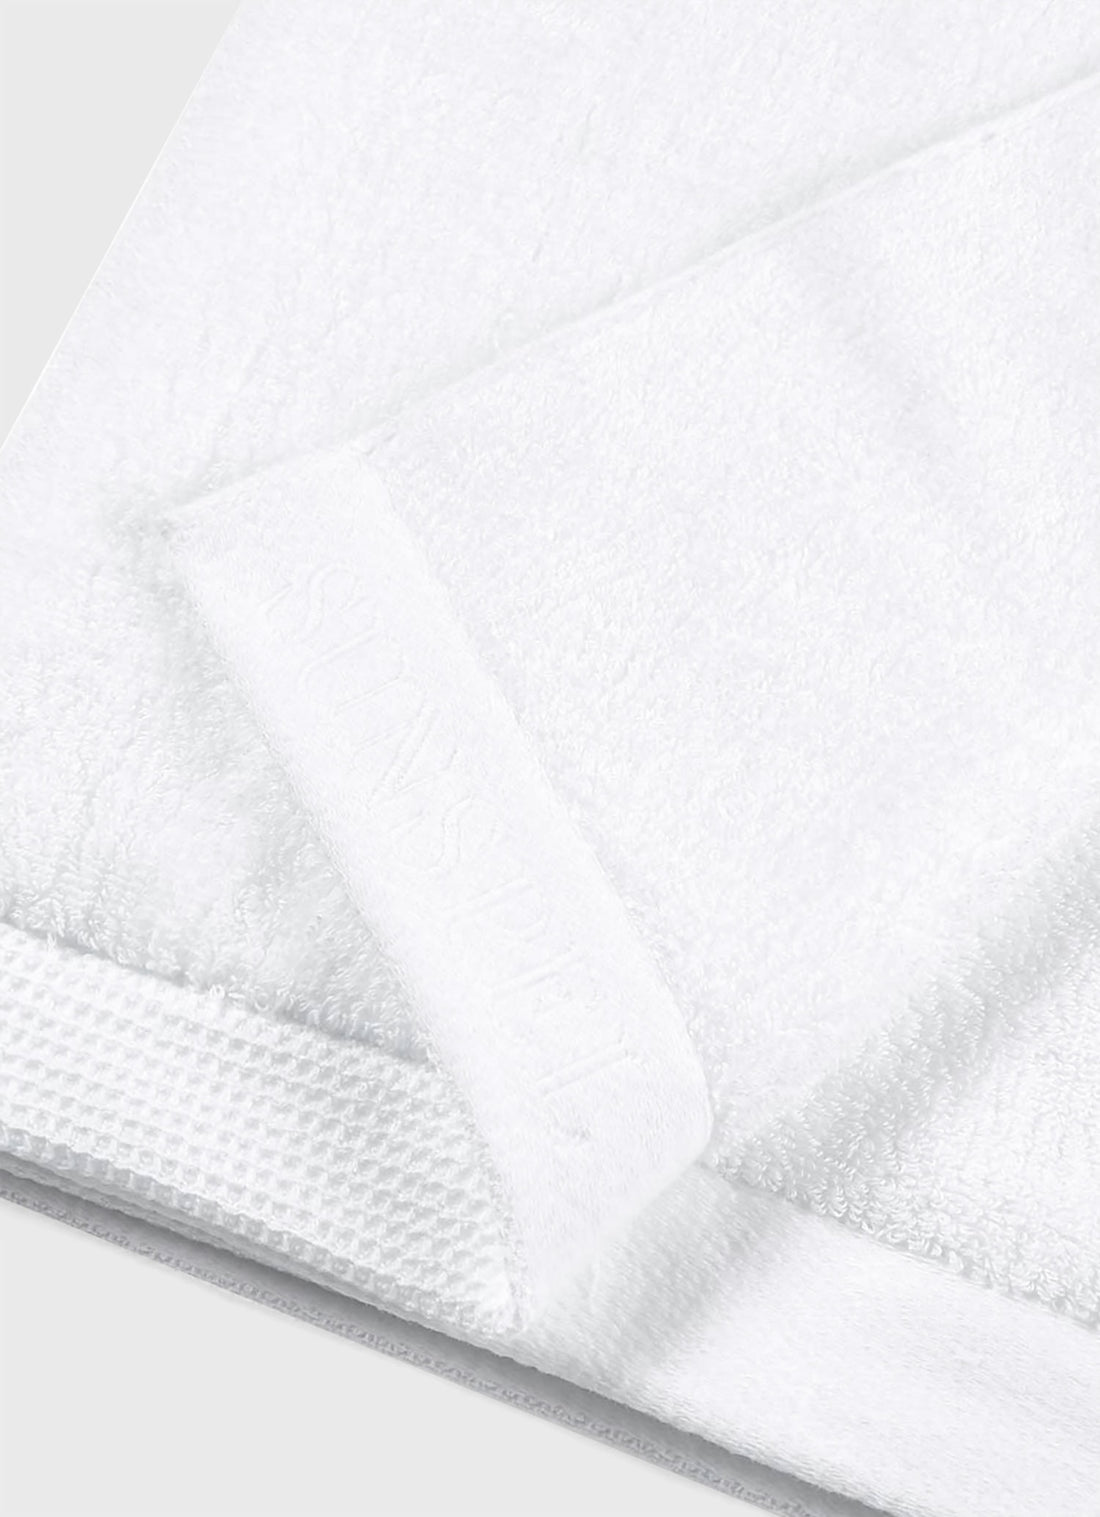 Japanese Imabari Towel in White